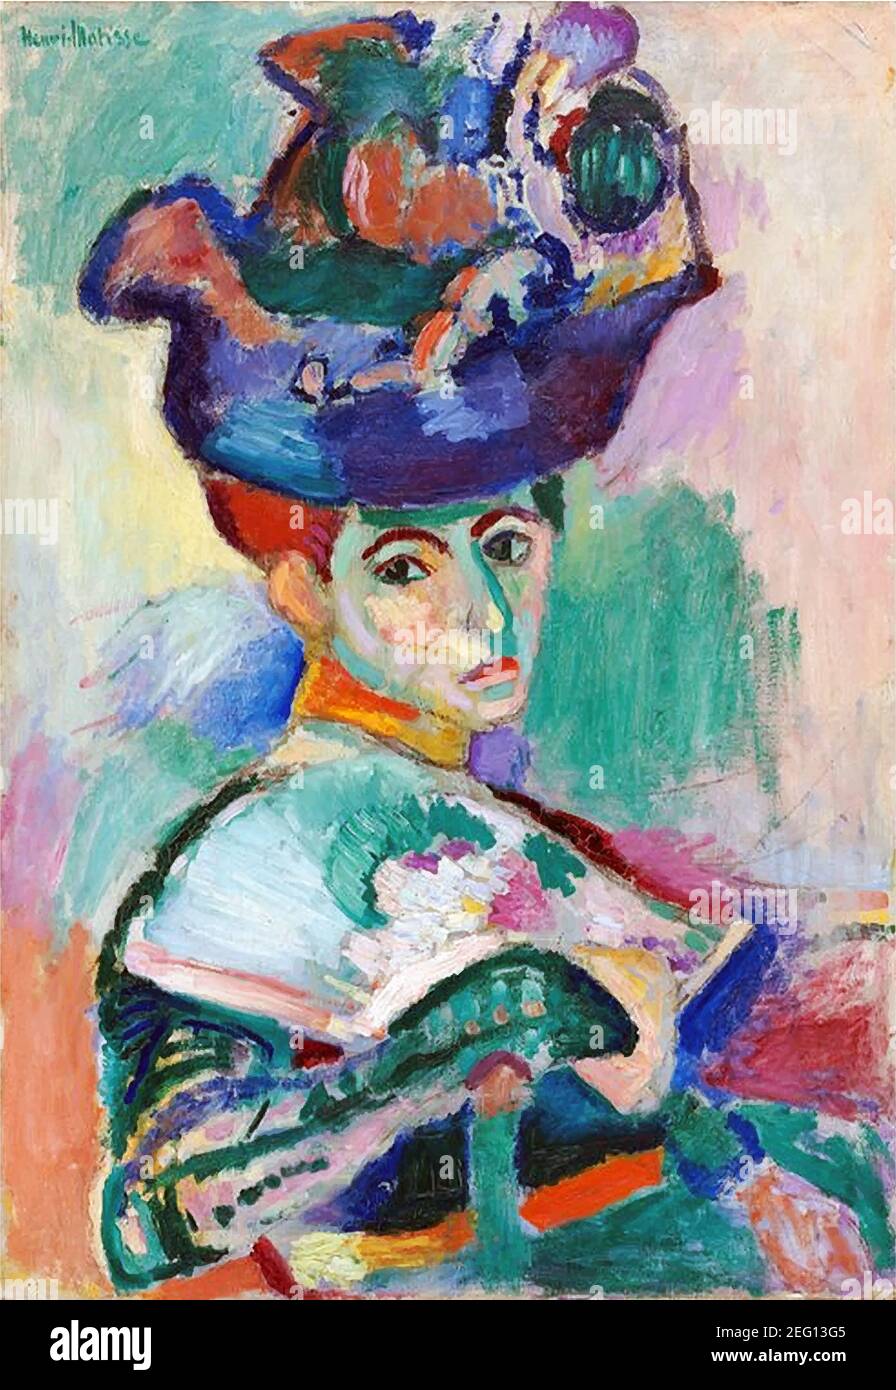 Mon numérique a modifié la femme avec UN chapeau d'Henri Matisse 1905. Musée d'Art moderne de San Francisco, Etats-Unis Banque D'Images